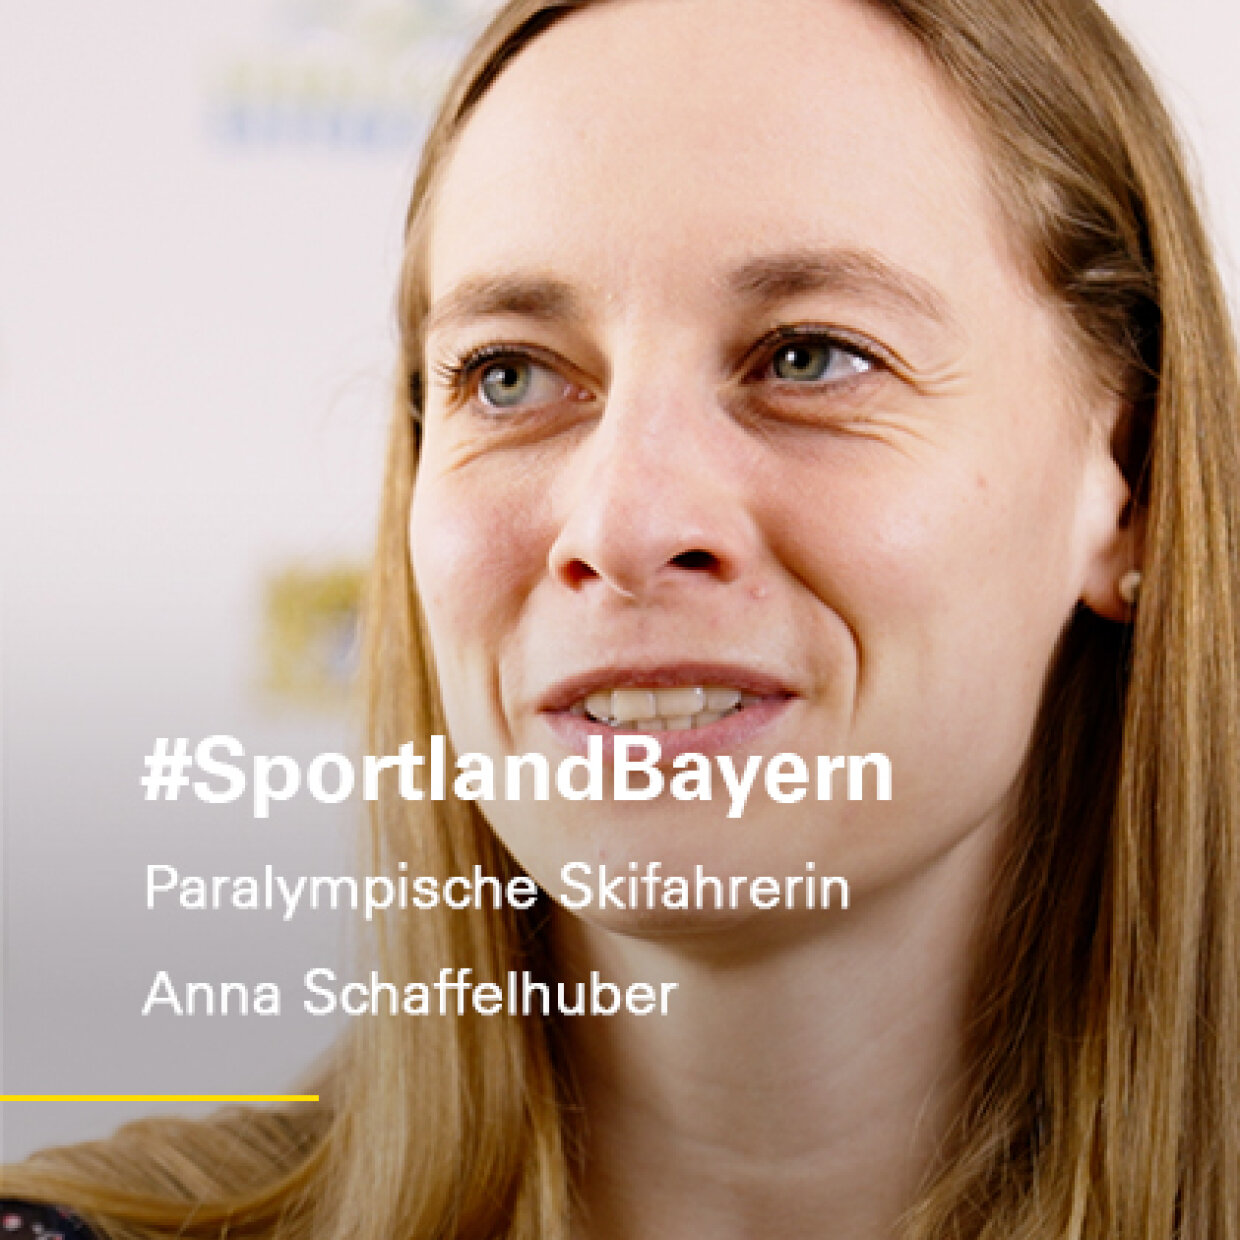 Vorschau zum Video #SportlandBayern Anna Schaffelhuber, Paralympische Skifahrerin